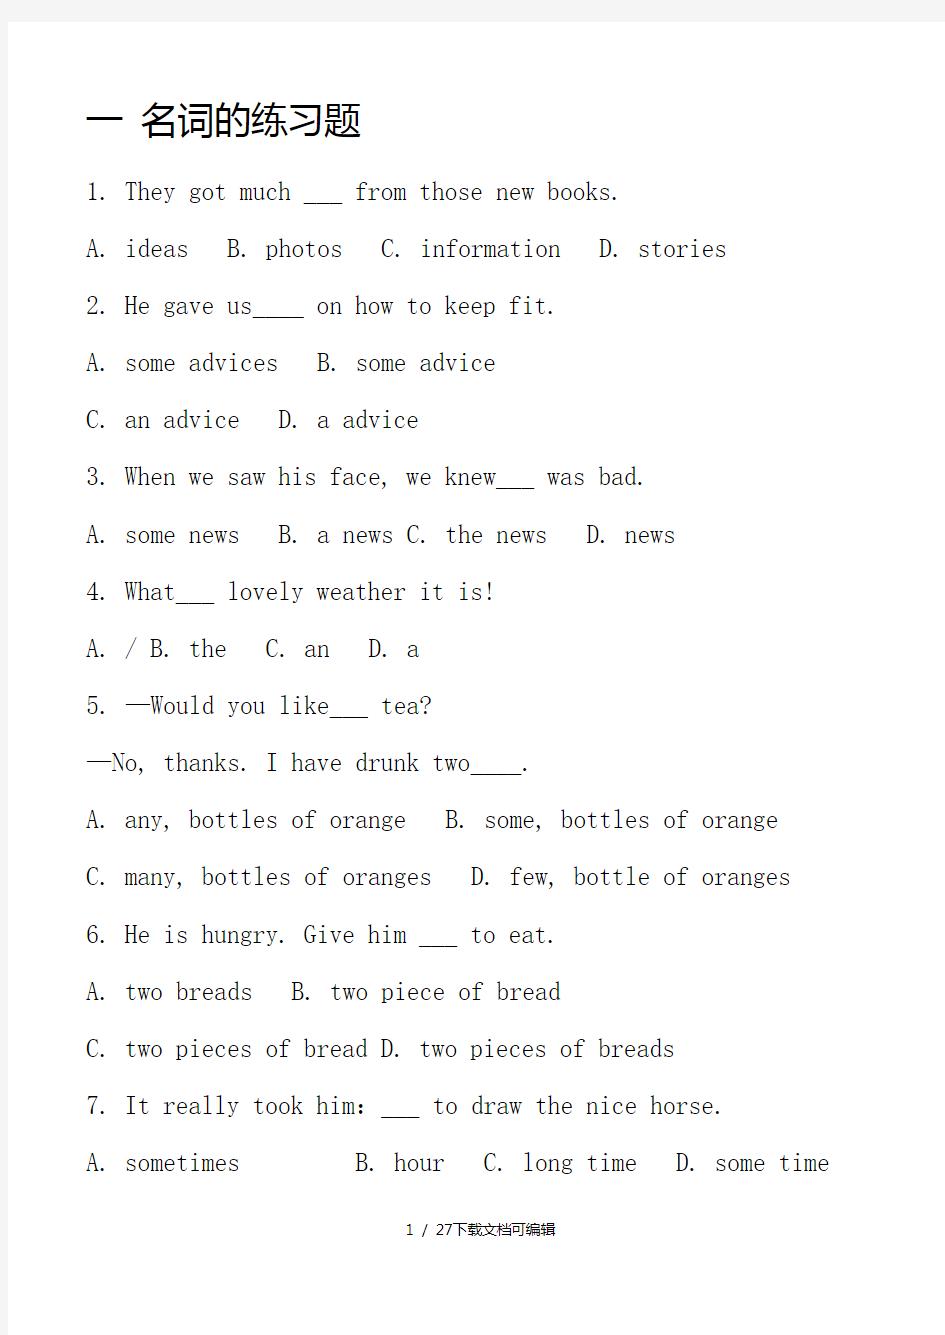 英语冠词,名词,代词,数词练习题及答案